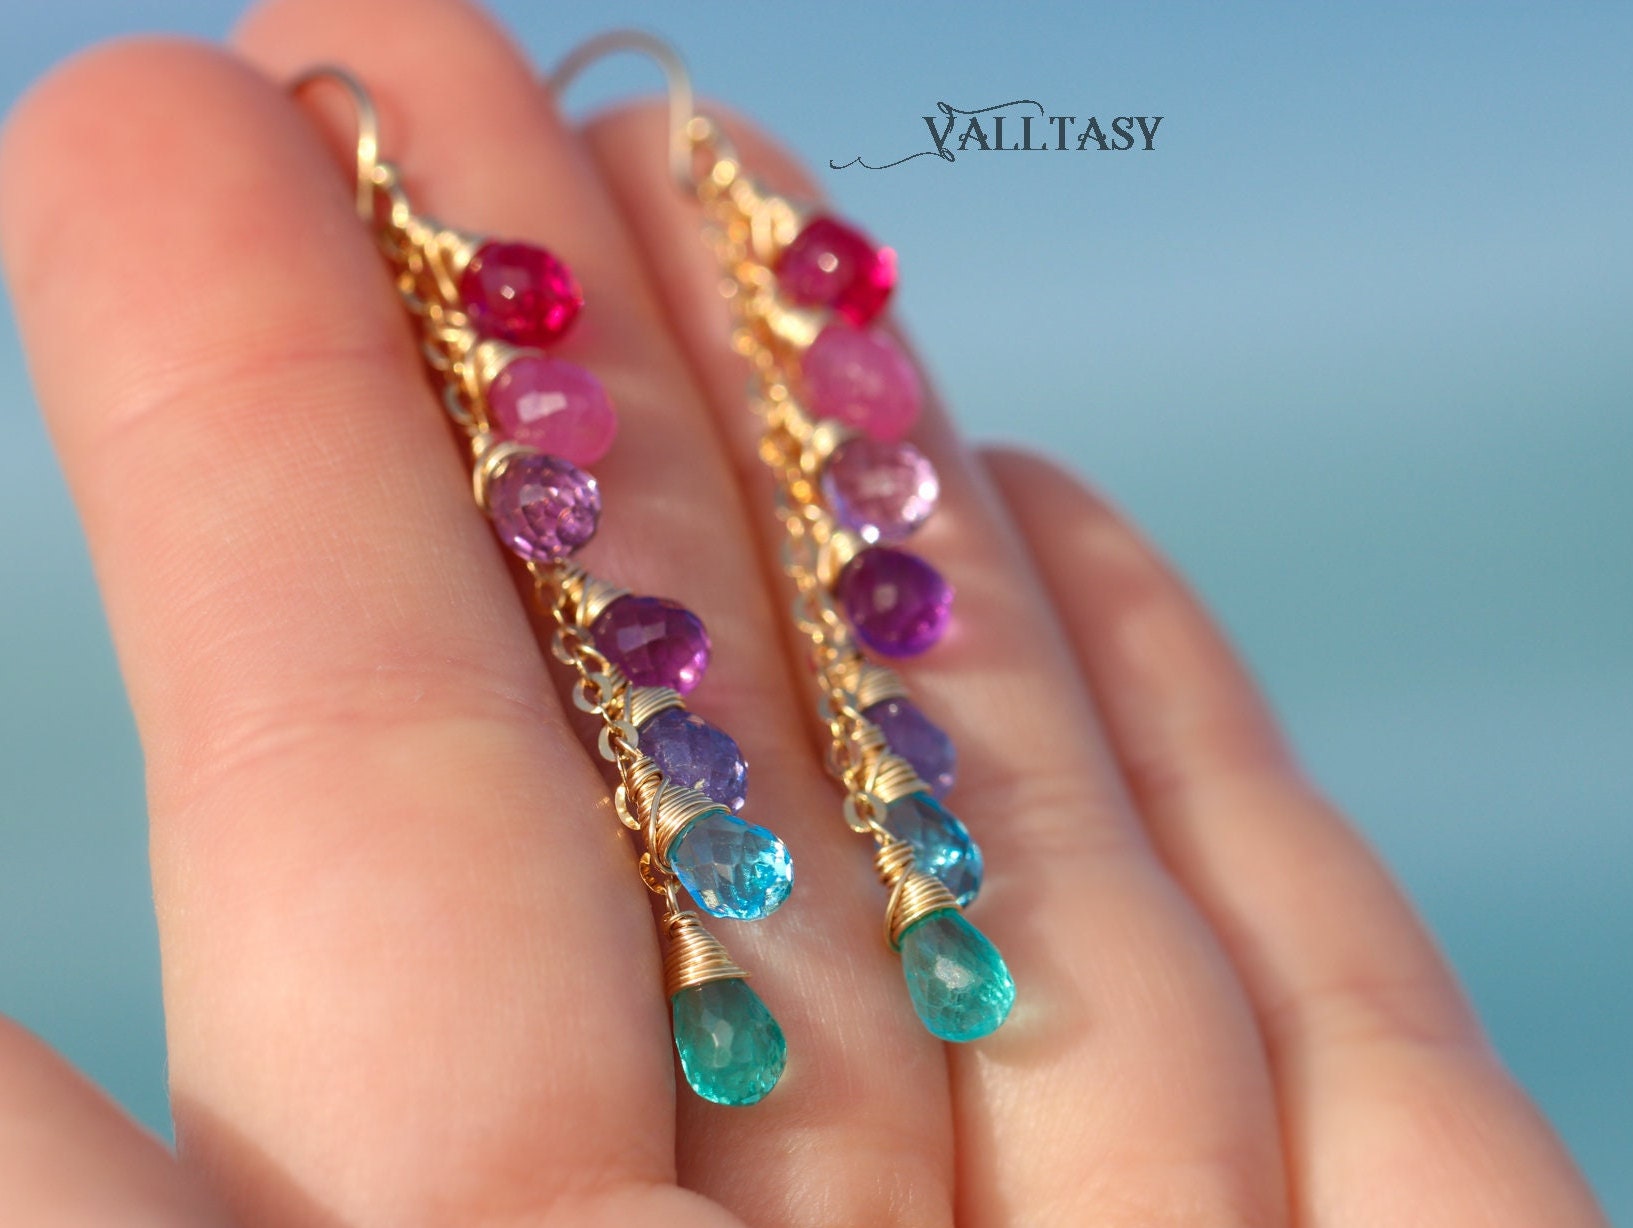 Multi Gemstone Pink Purple Blue Drop Earrings, Linear Gemstone Earrings